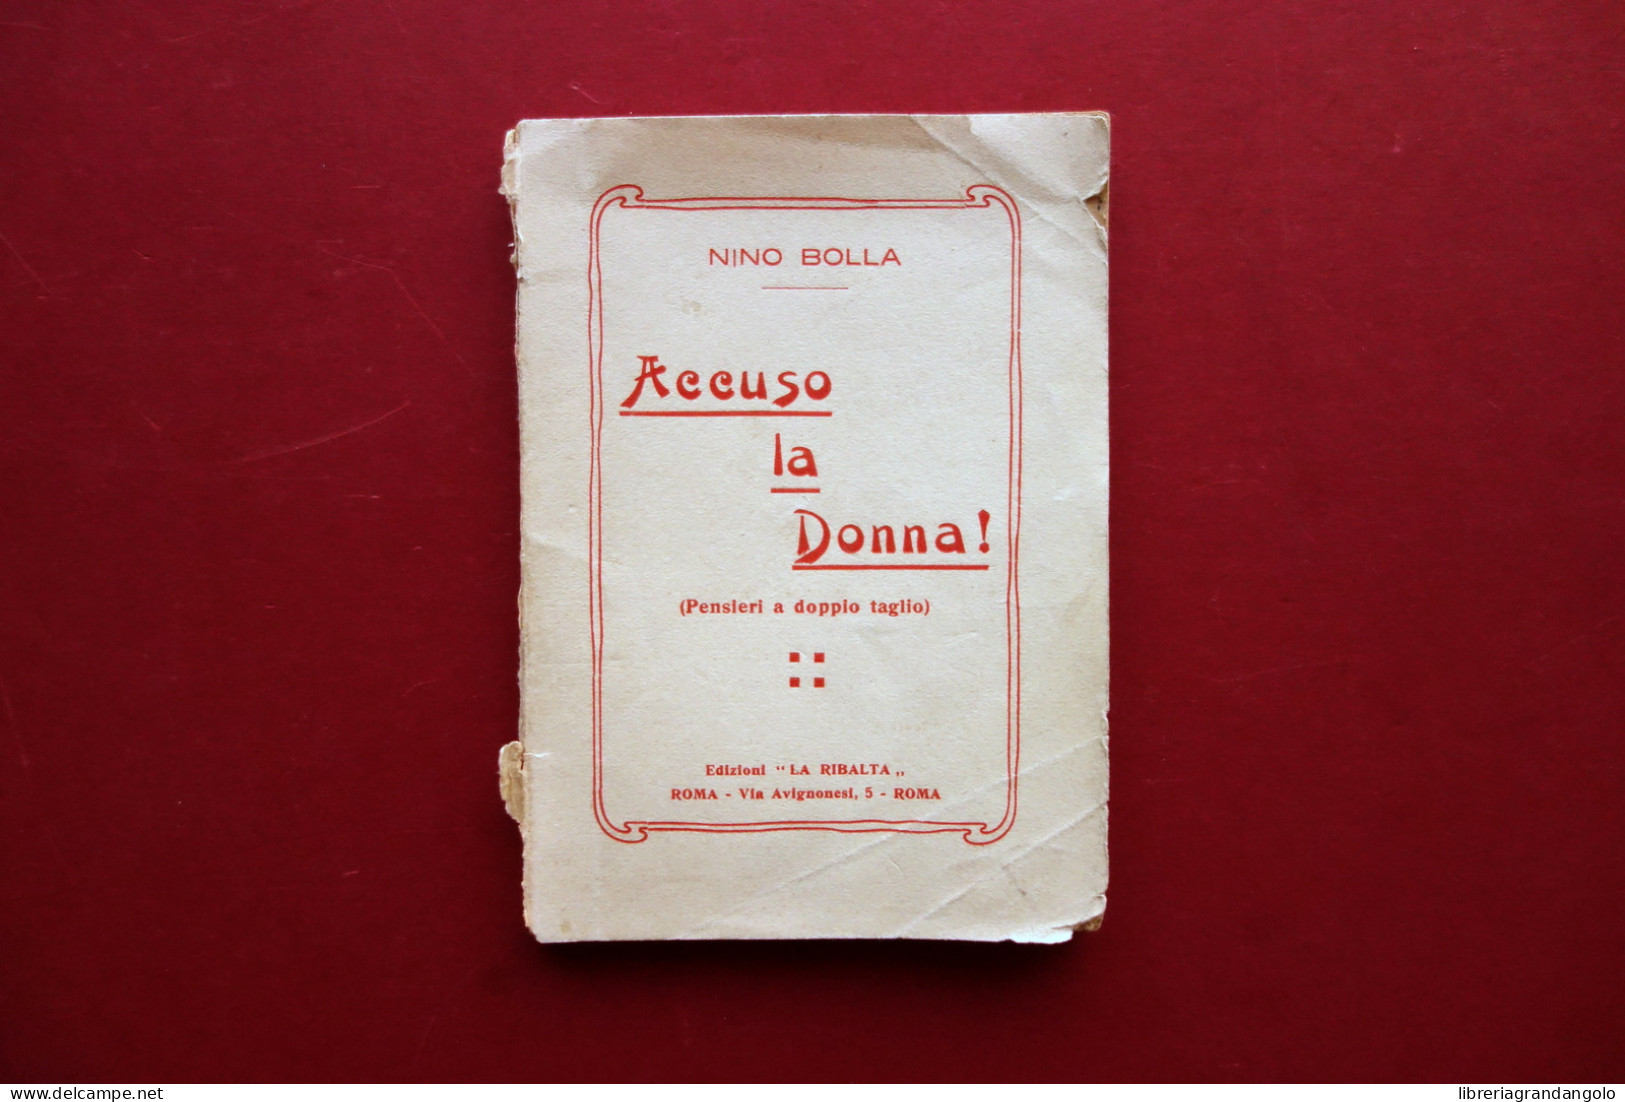 Accuso La Donna! Nino Bolla Ed. La Ribalta Roma 1925(?) Autografo Antifemminismo - Unclassified